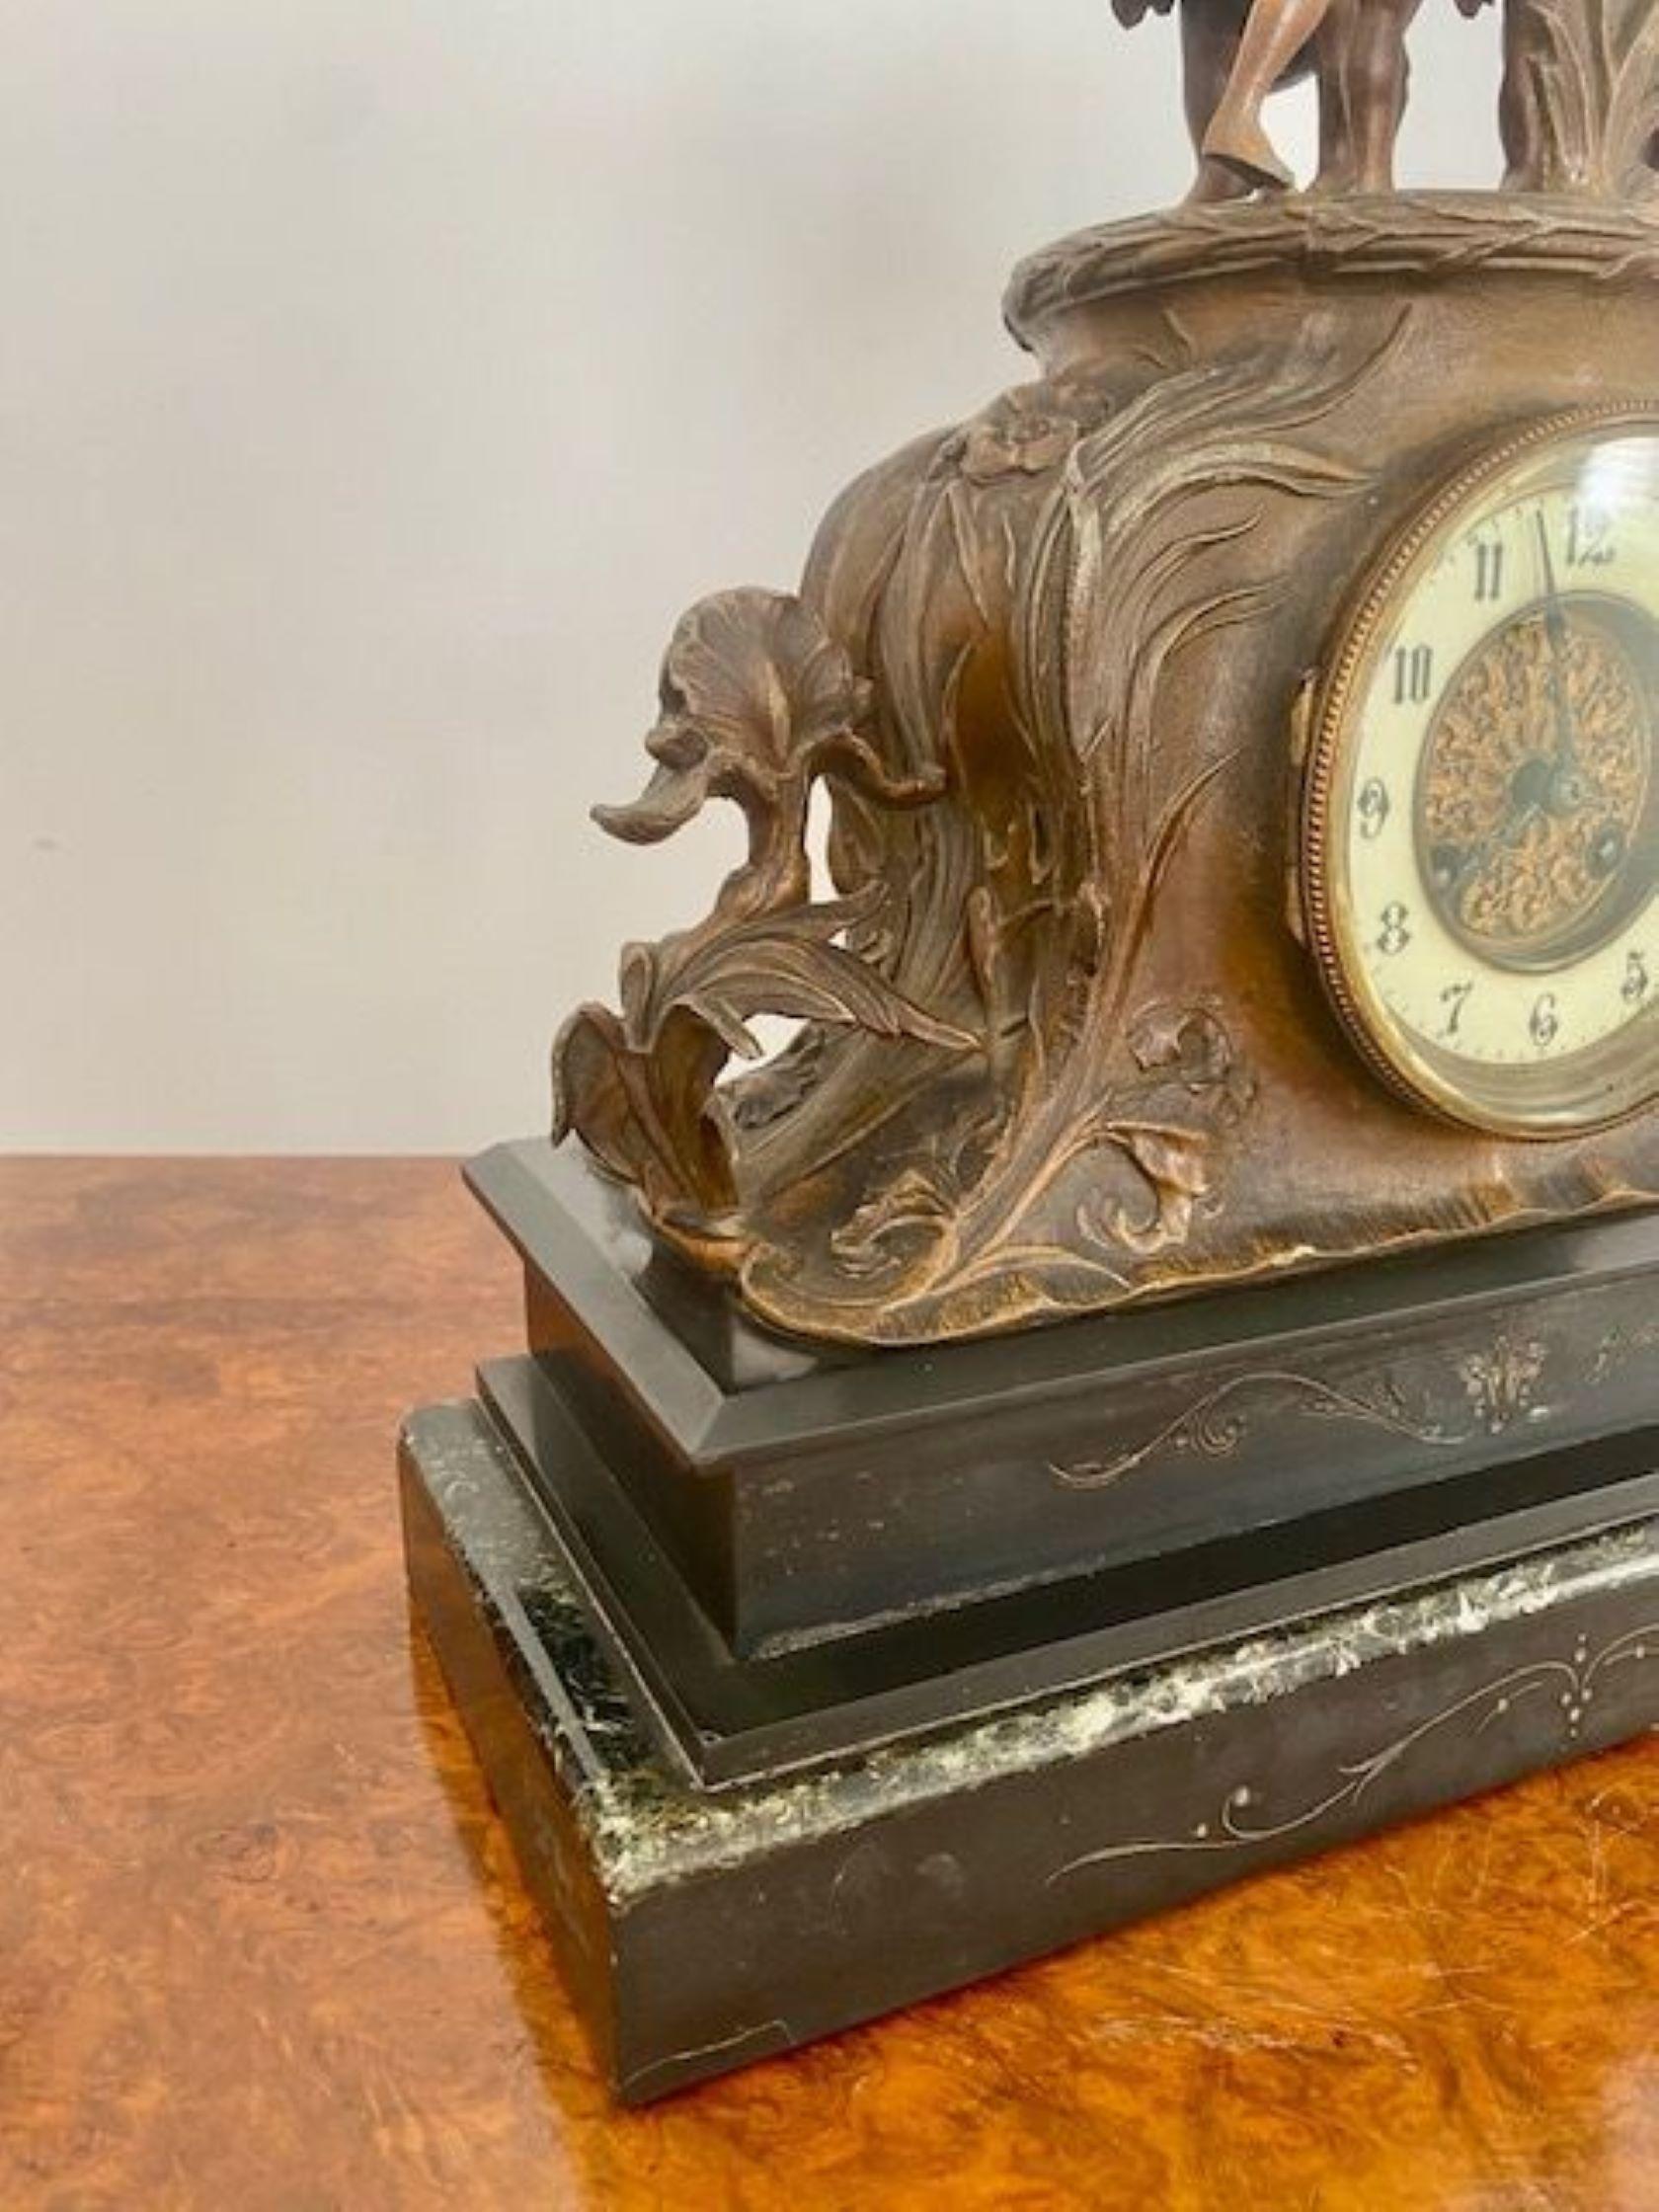 Grande horloge de manteau victorienne en marbre avec des chevaux Marley sur le dessus, horloge circulaire avec un cadran en porcelaine et des aiguilles d'origine, mouvement de 8 jours sonnant l'heure et la demi-heure sur un gong reposant sur une